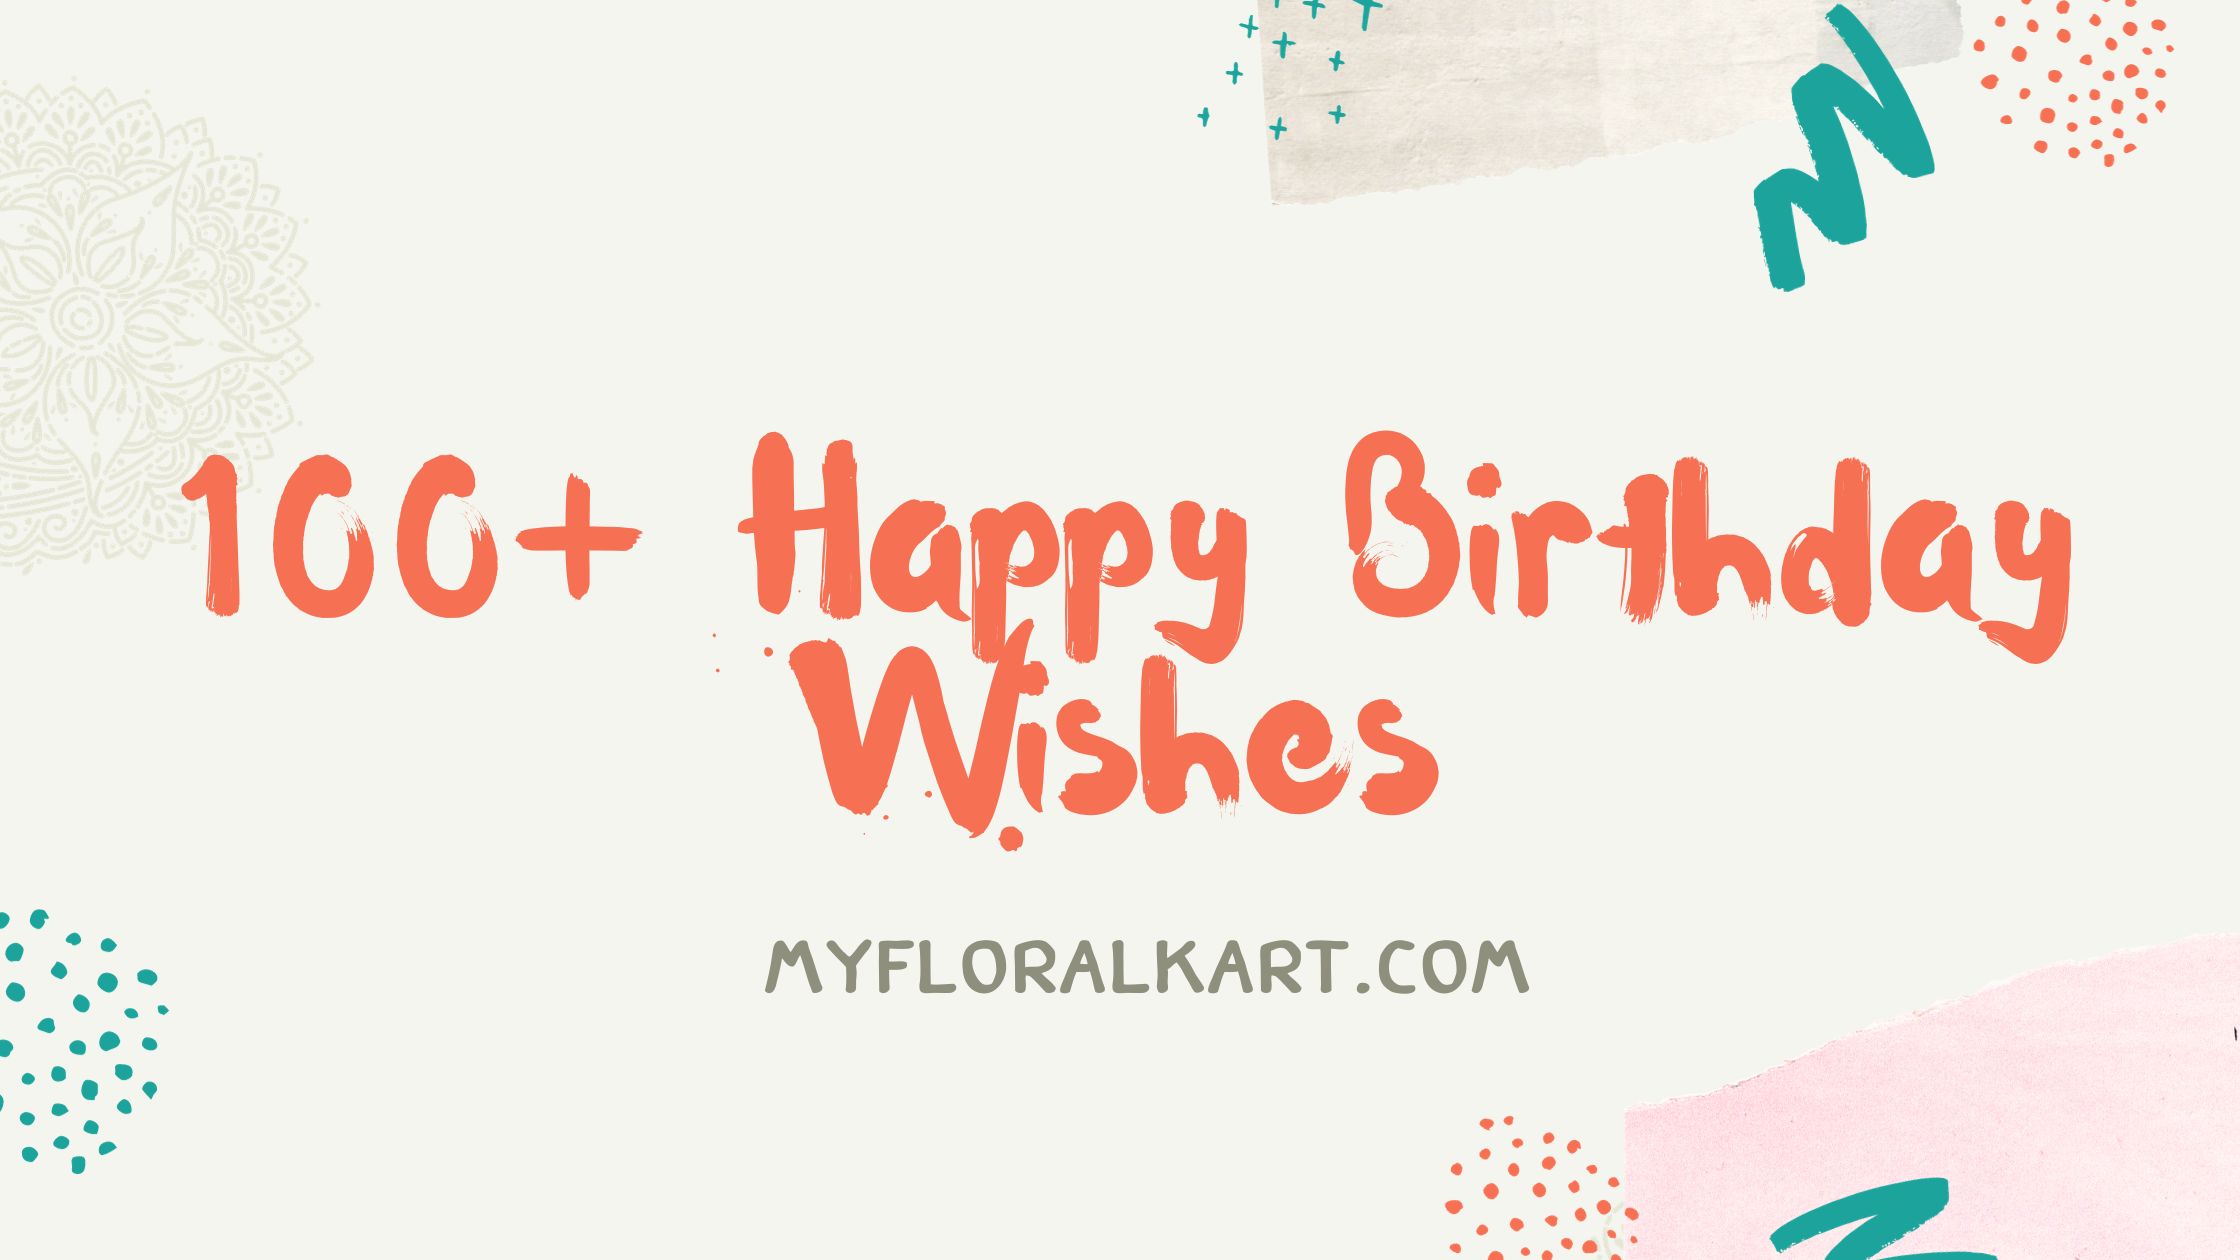 100+ Happy Birthday Wishes - Myfloralkart